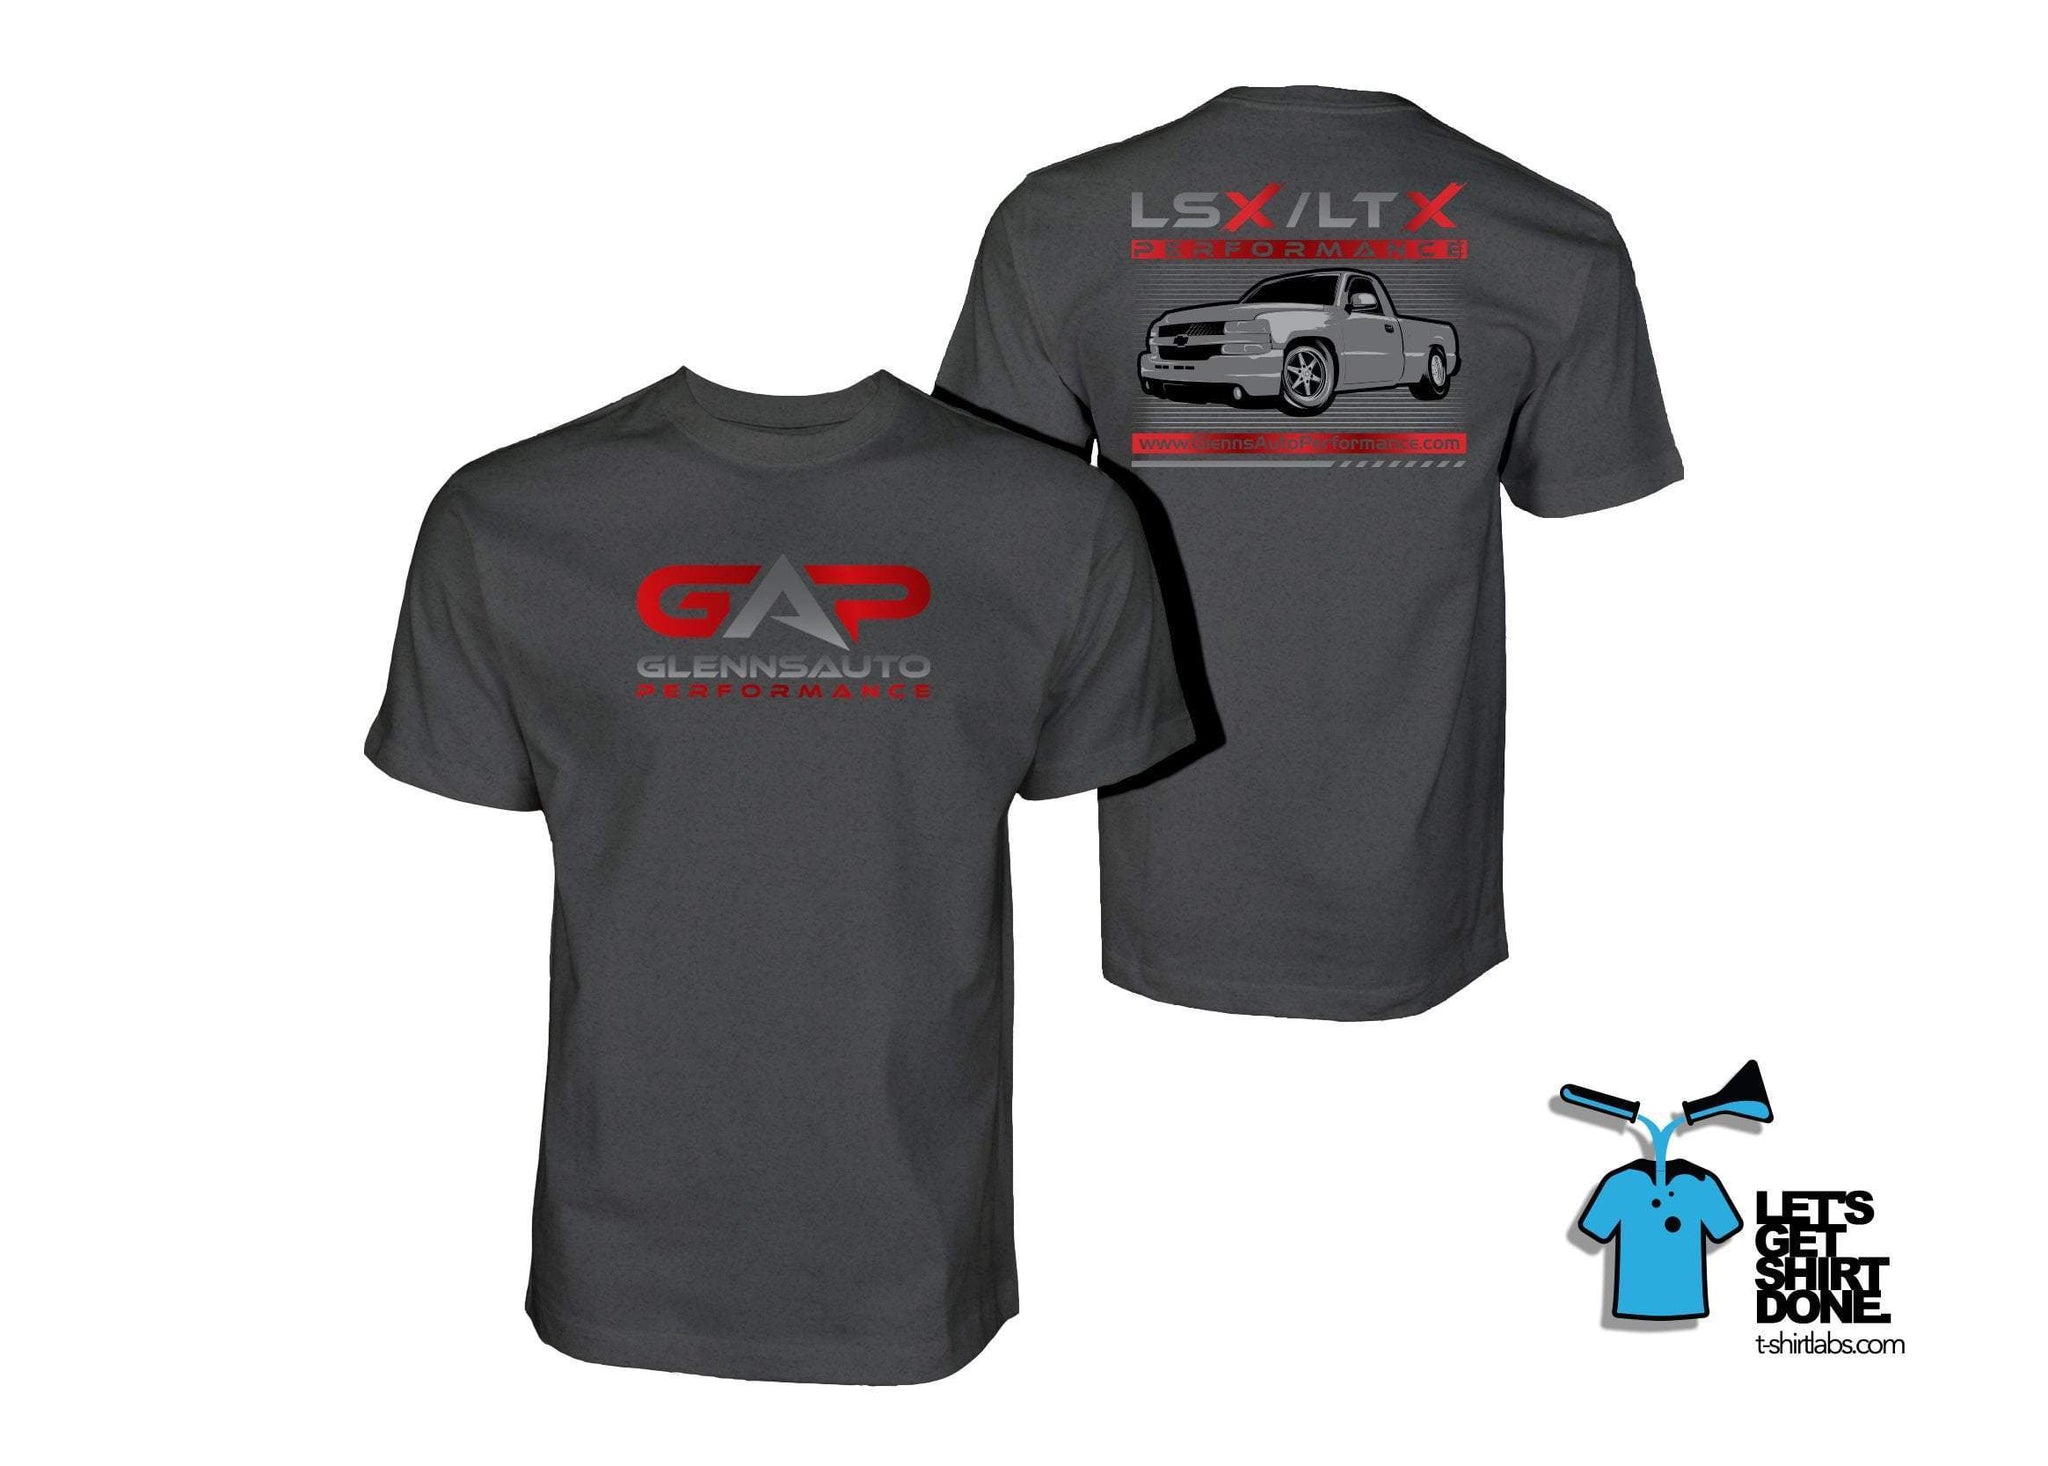 GAP LSx/LTx Truck T-Shirt (Graphite)